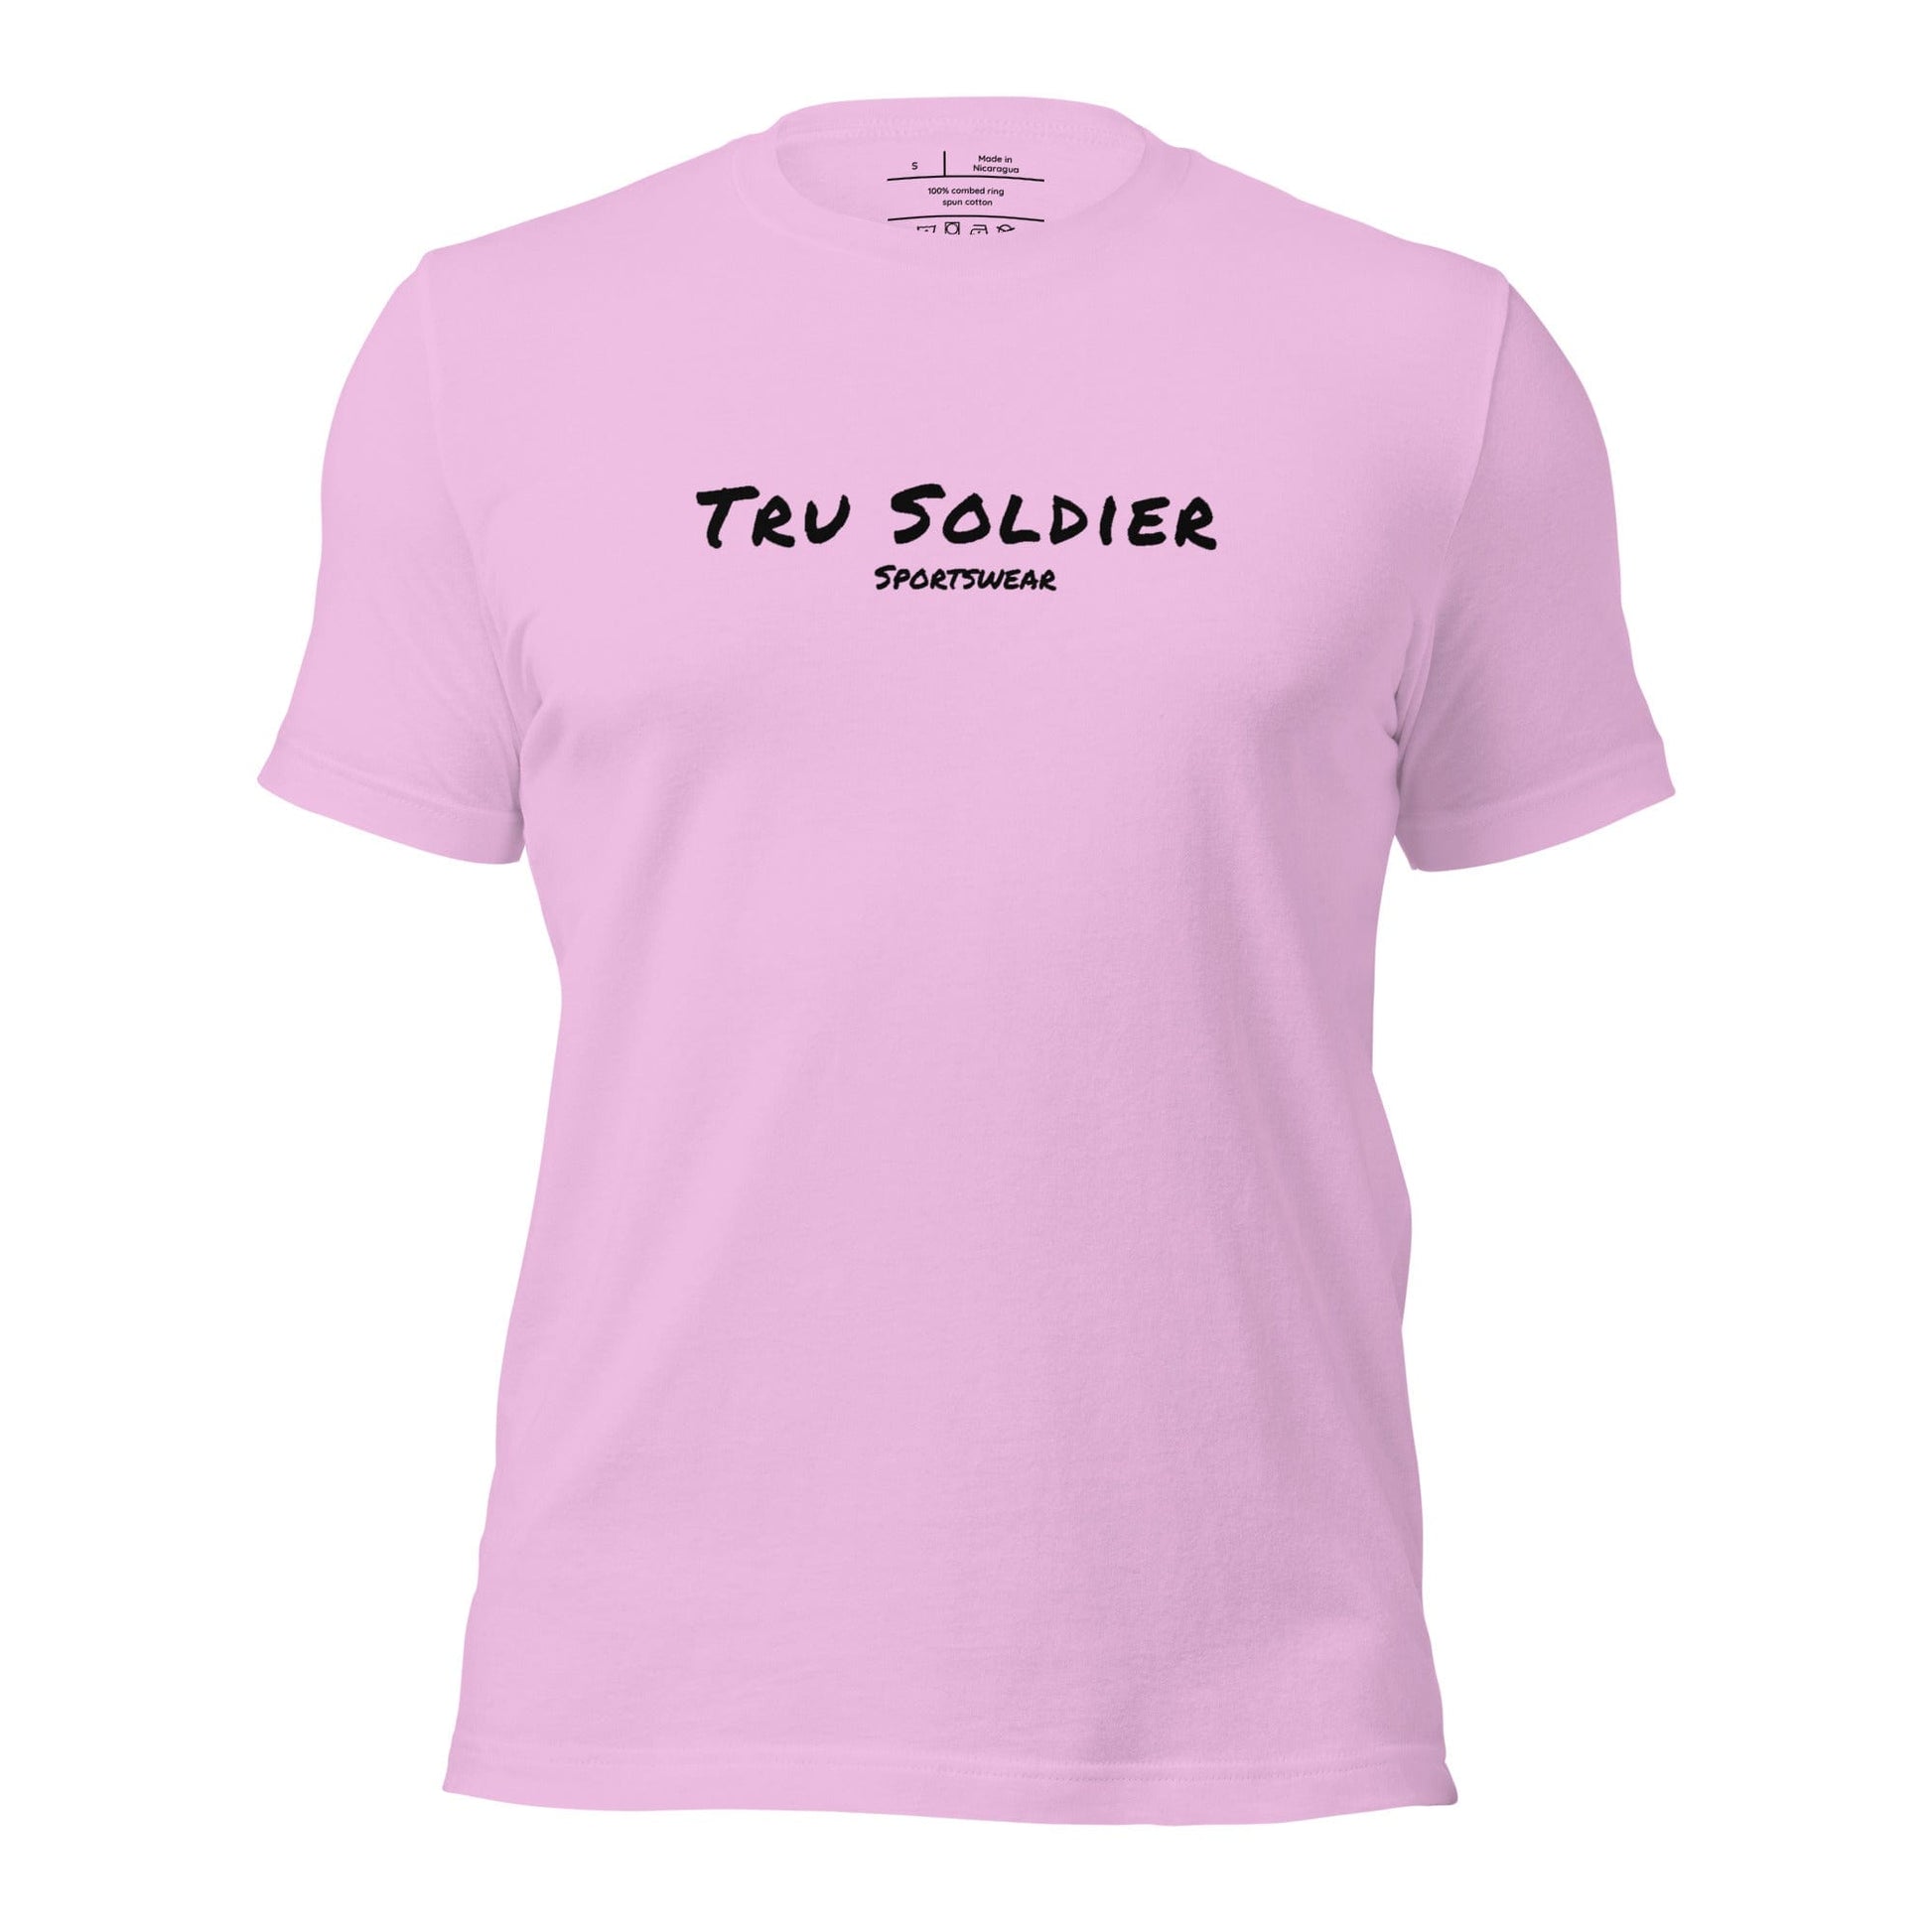 Tru Soldier Sportswear  Lilac / S Unisex t-shirt